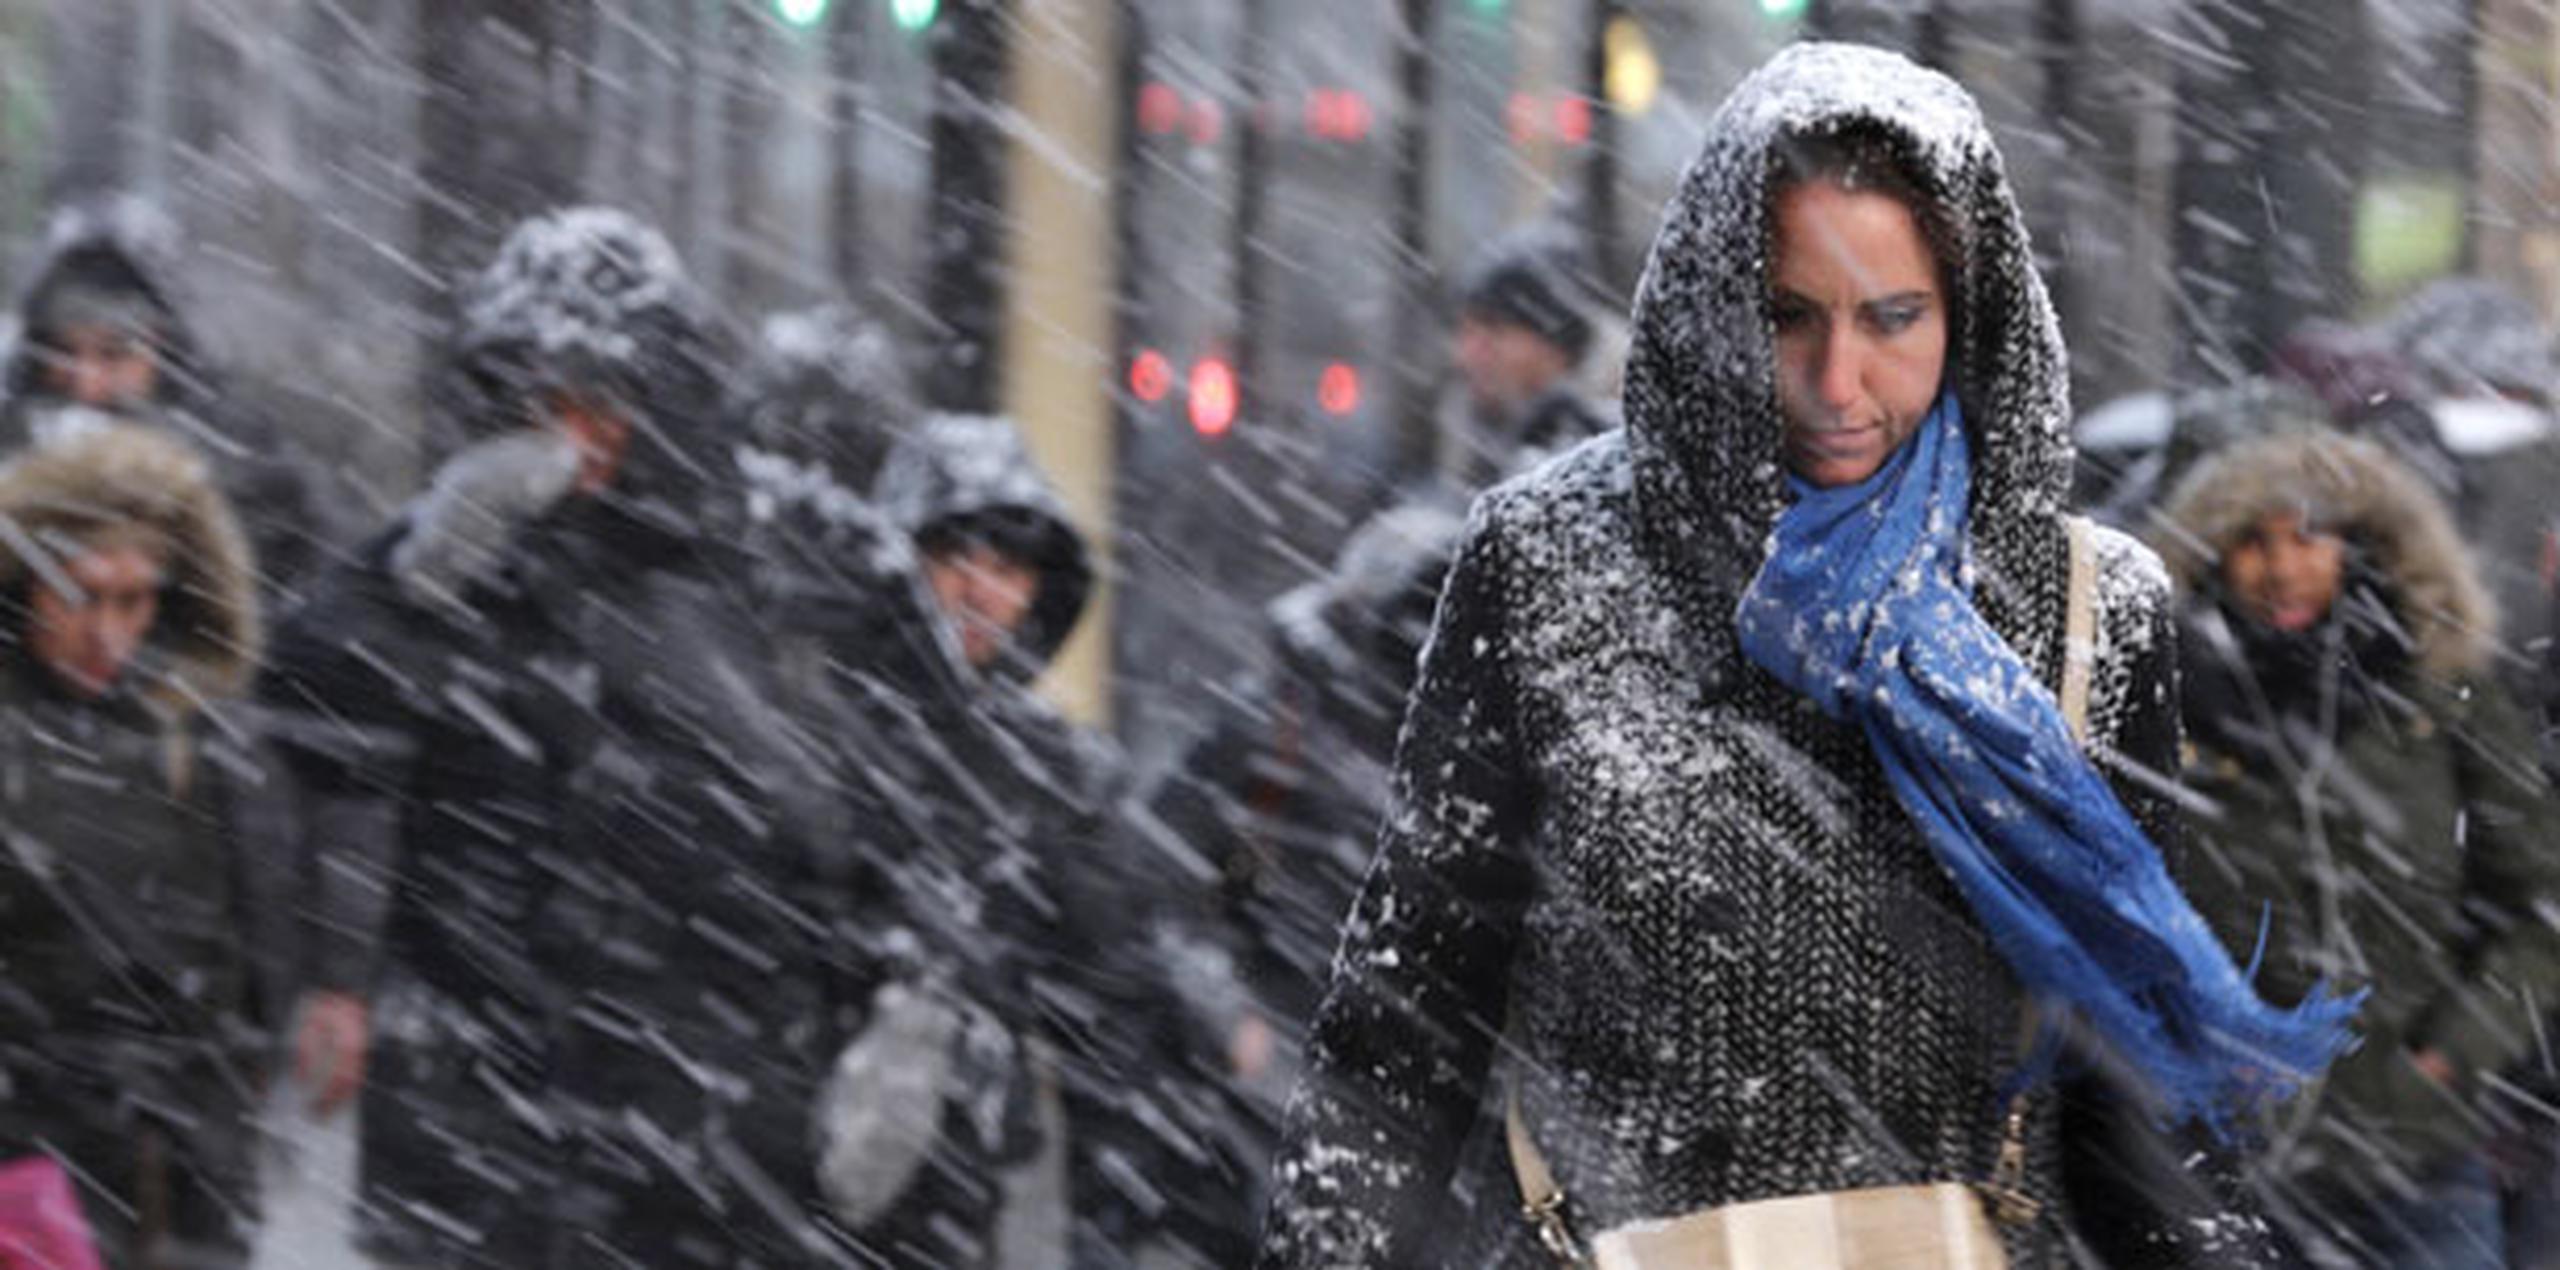 Medios estadounidenses reportan que los pronósticos más pesimistas hablan de la posibilidad de que caigan hasta 90 centímetros de nieve en Nueva York, lo que sería un récord para la ciudad.
 (Prensa Asociada)